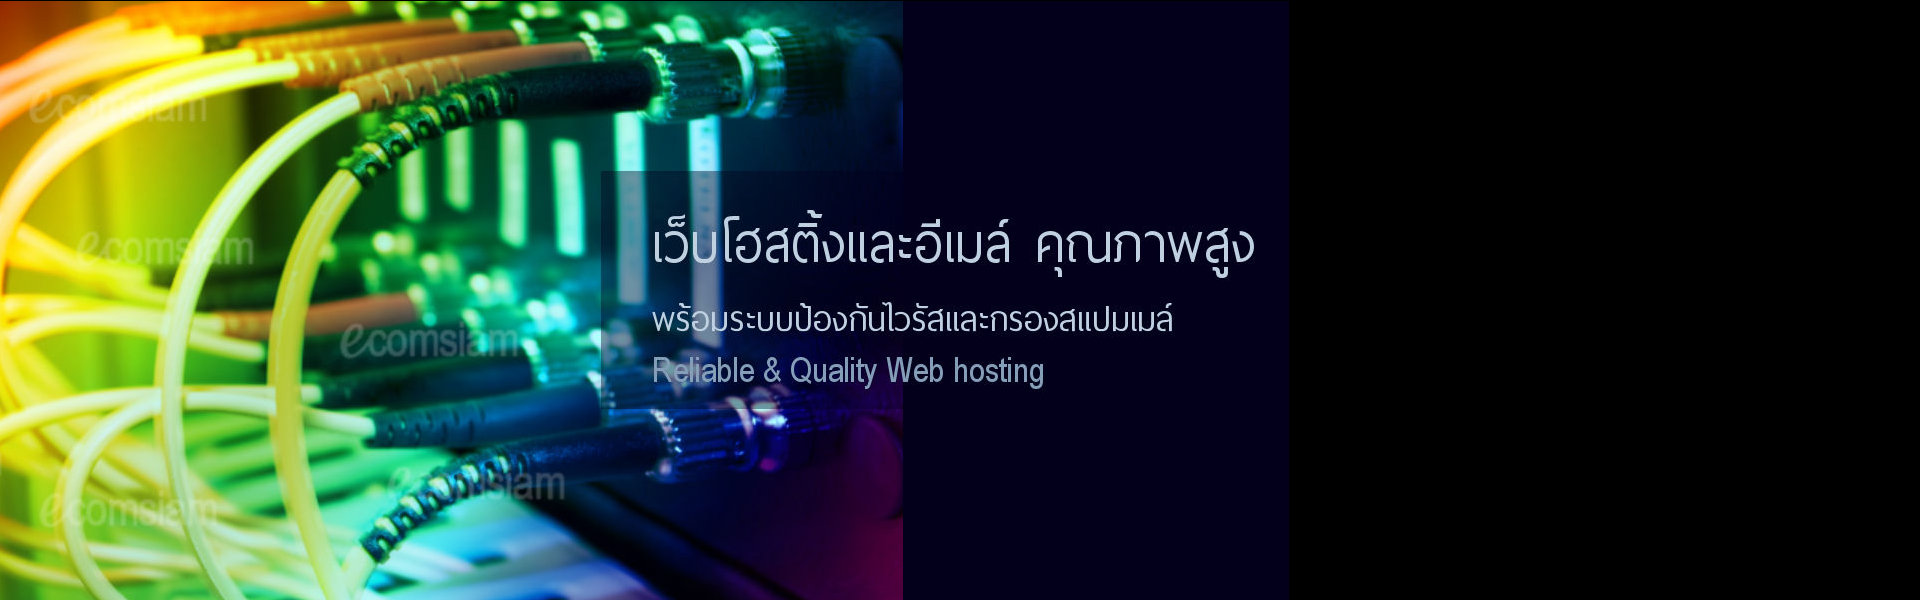 บริการเว็บสำเร็จรูป ฟรี โดเมนเนม ,web hosting thailand datacenter รับจดโดเมนเนม